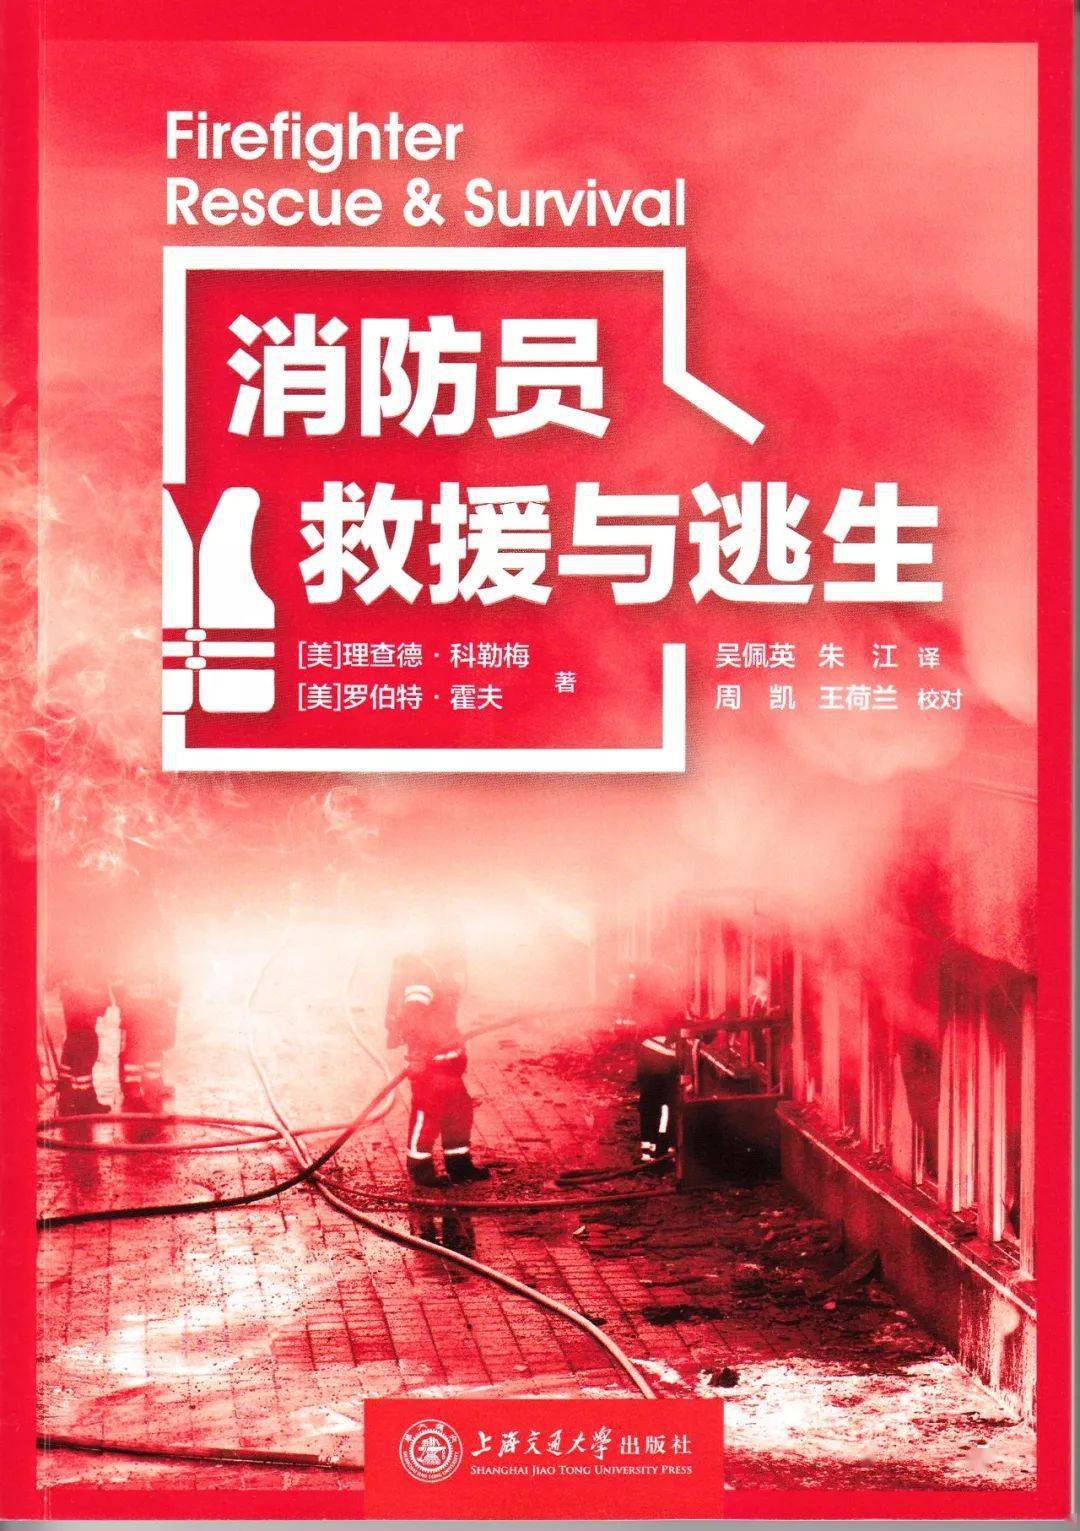 该成果由应急管理部上海消防研究所组织翻译,由上海交通大学出版社